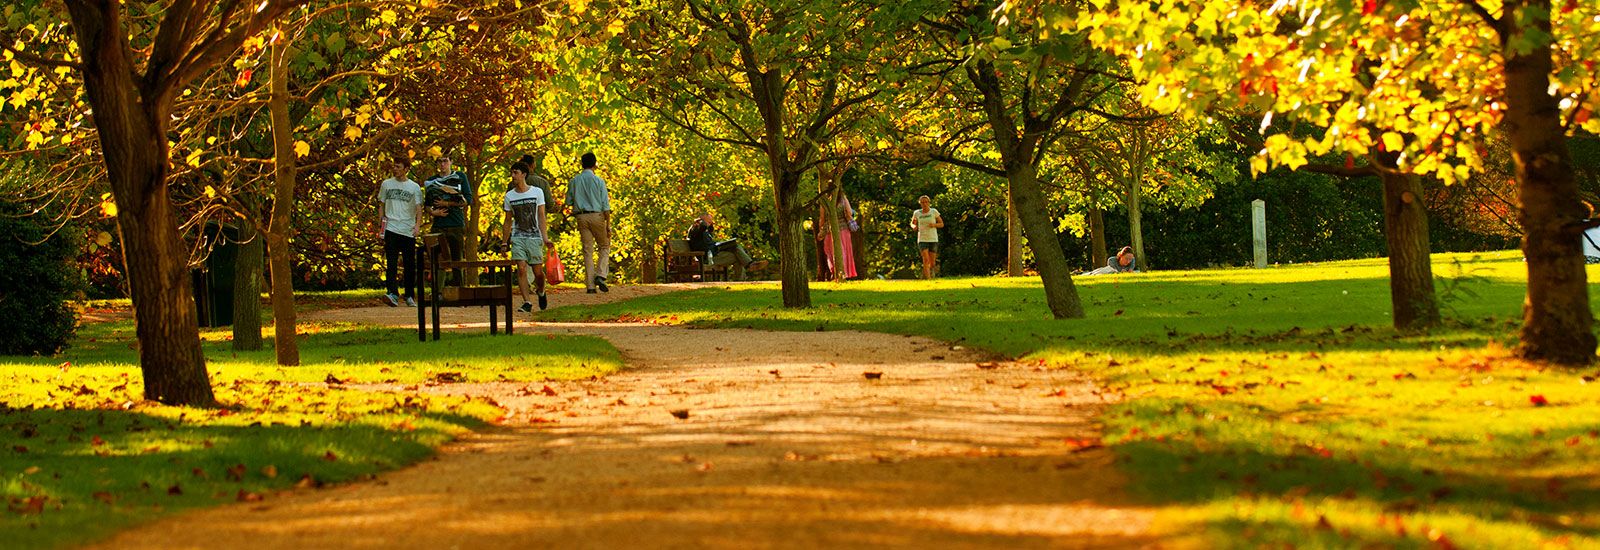 University Parks in autumn